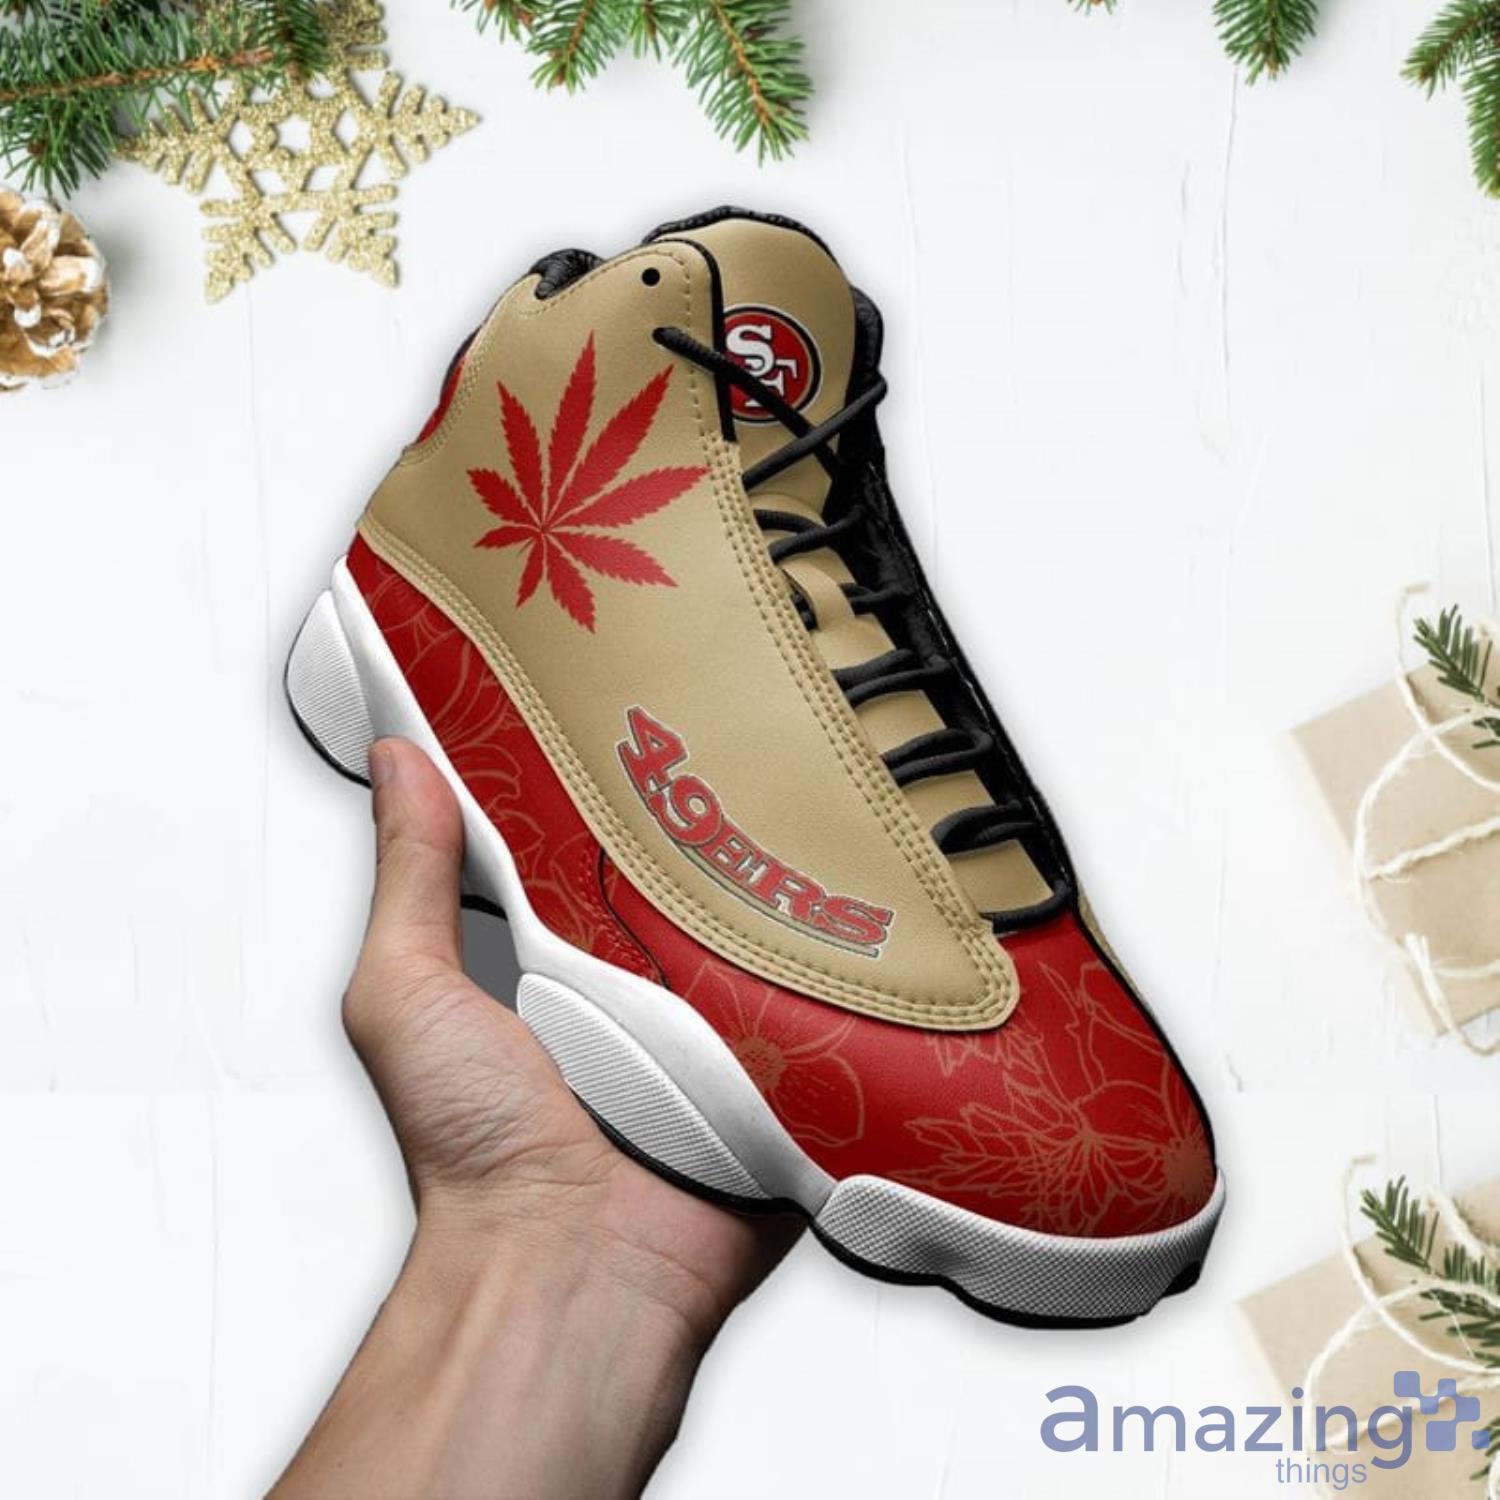 San Francisco 49ers Fans Custom Name Air Jordan 13 Sneaker Shoes –